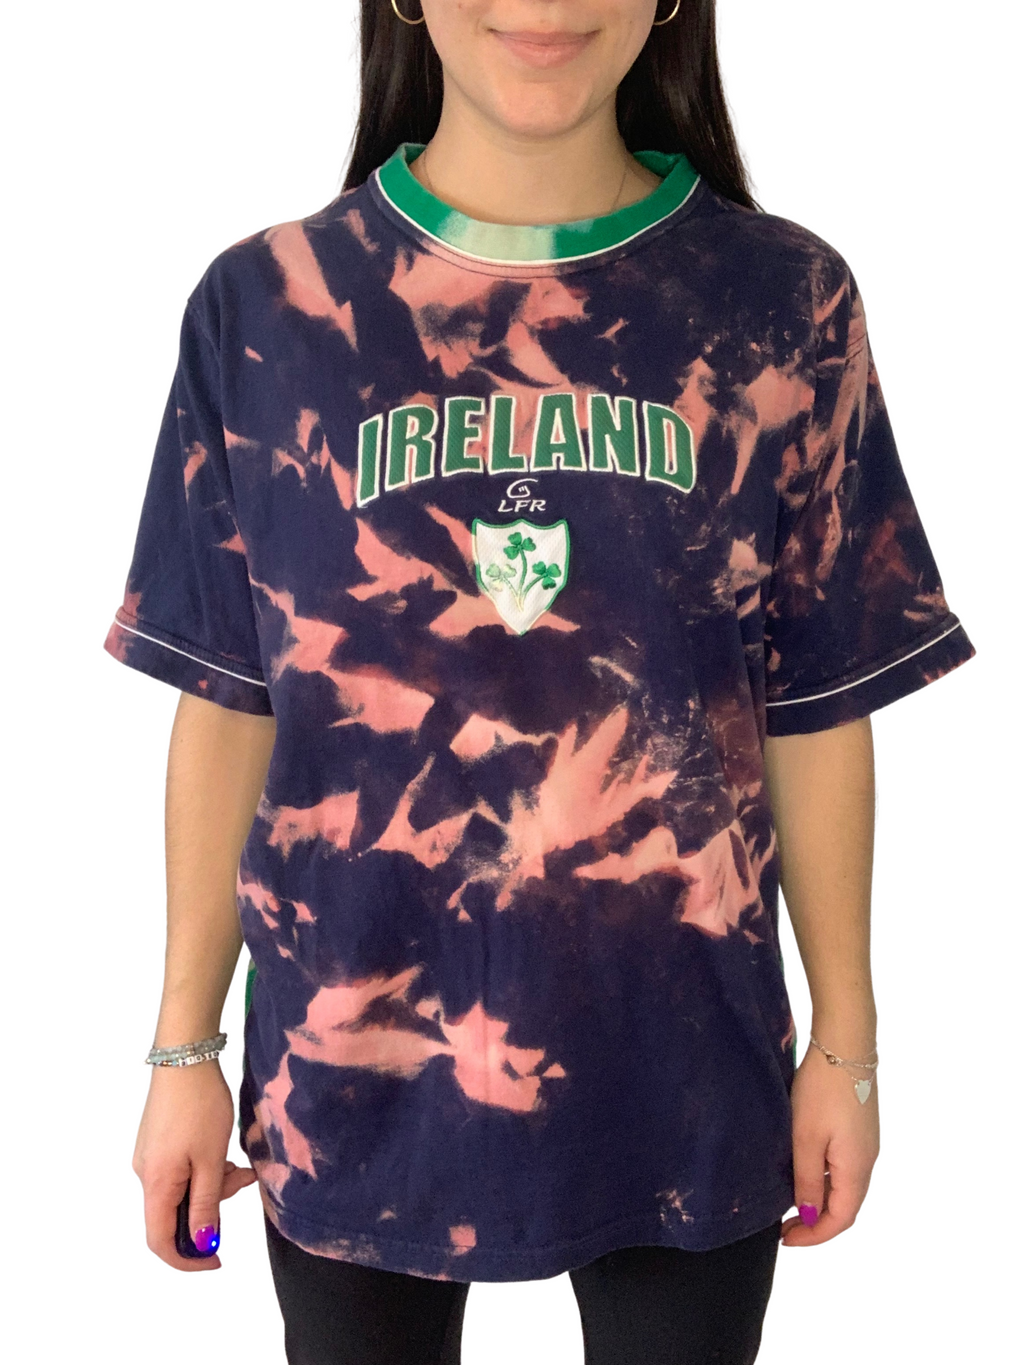 Ireland Bleached Shirt